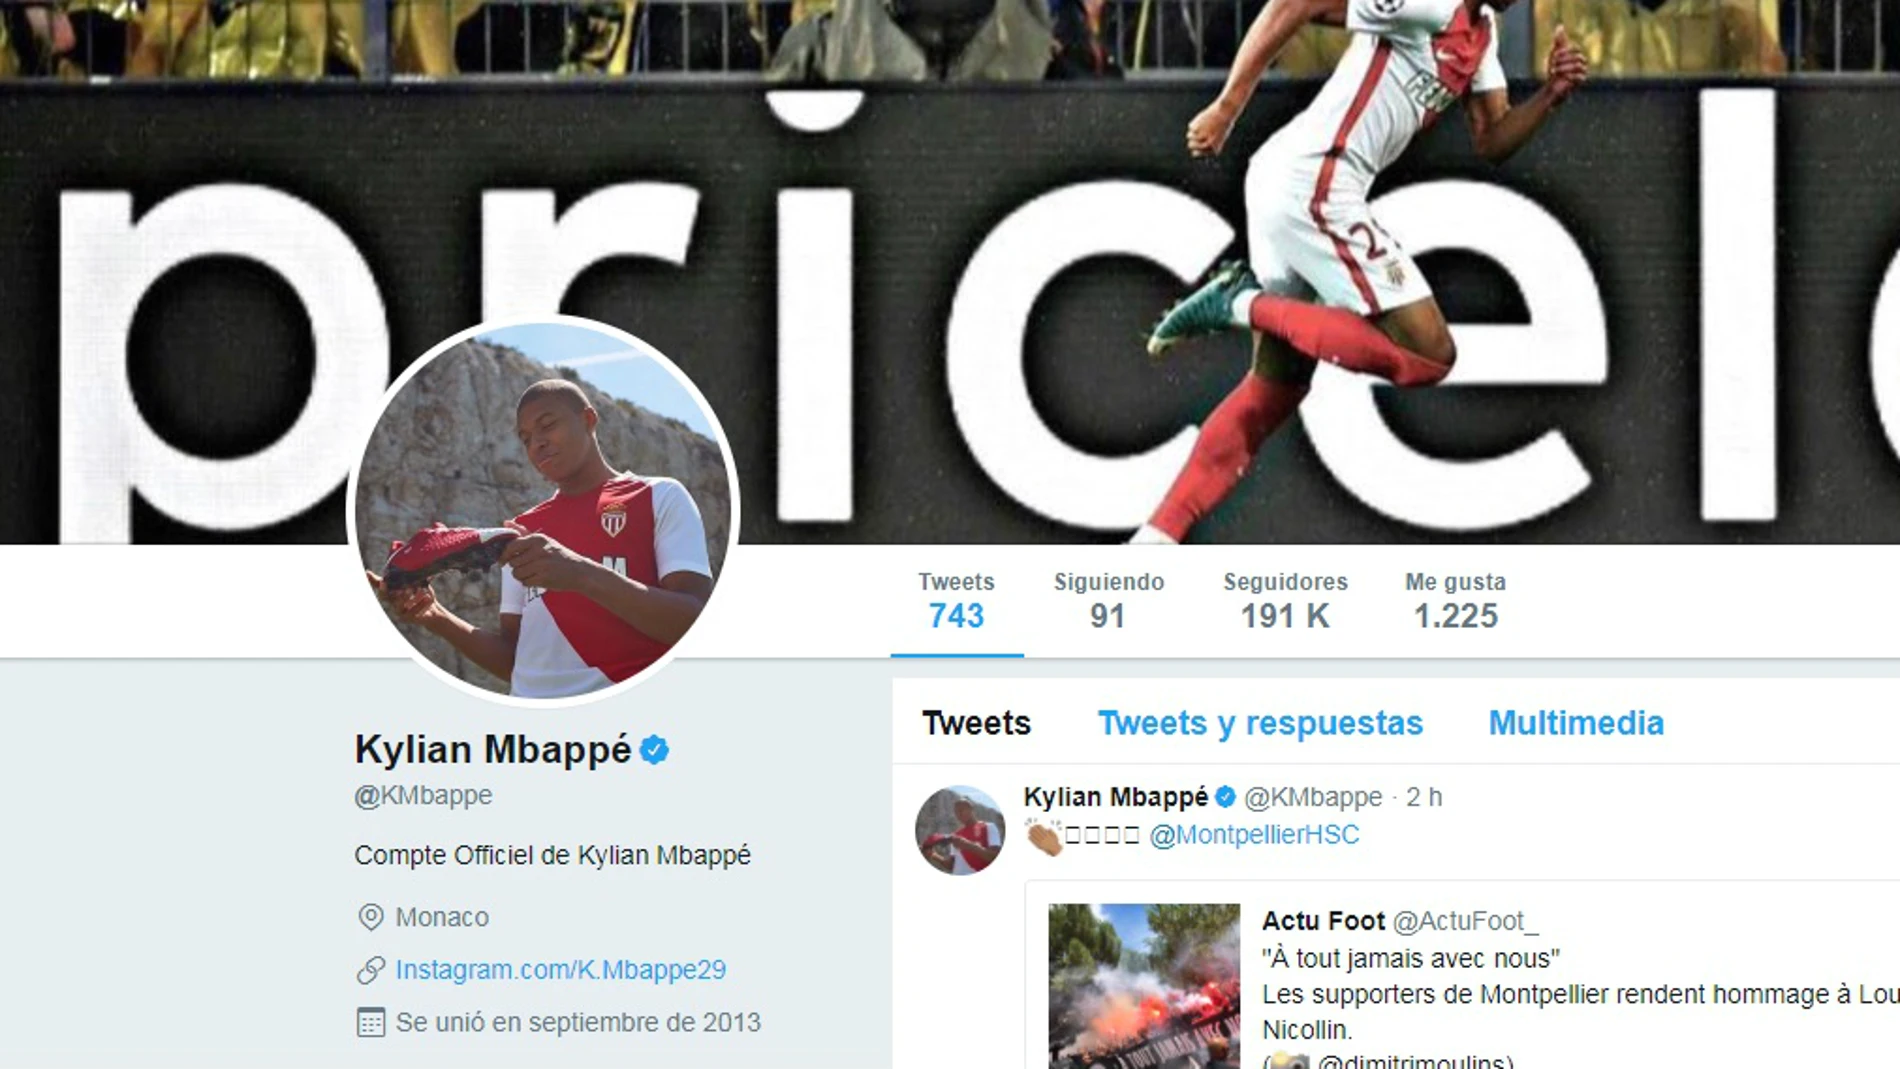 La cuenta de Twitter de Mbappé